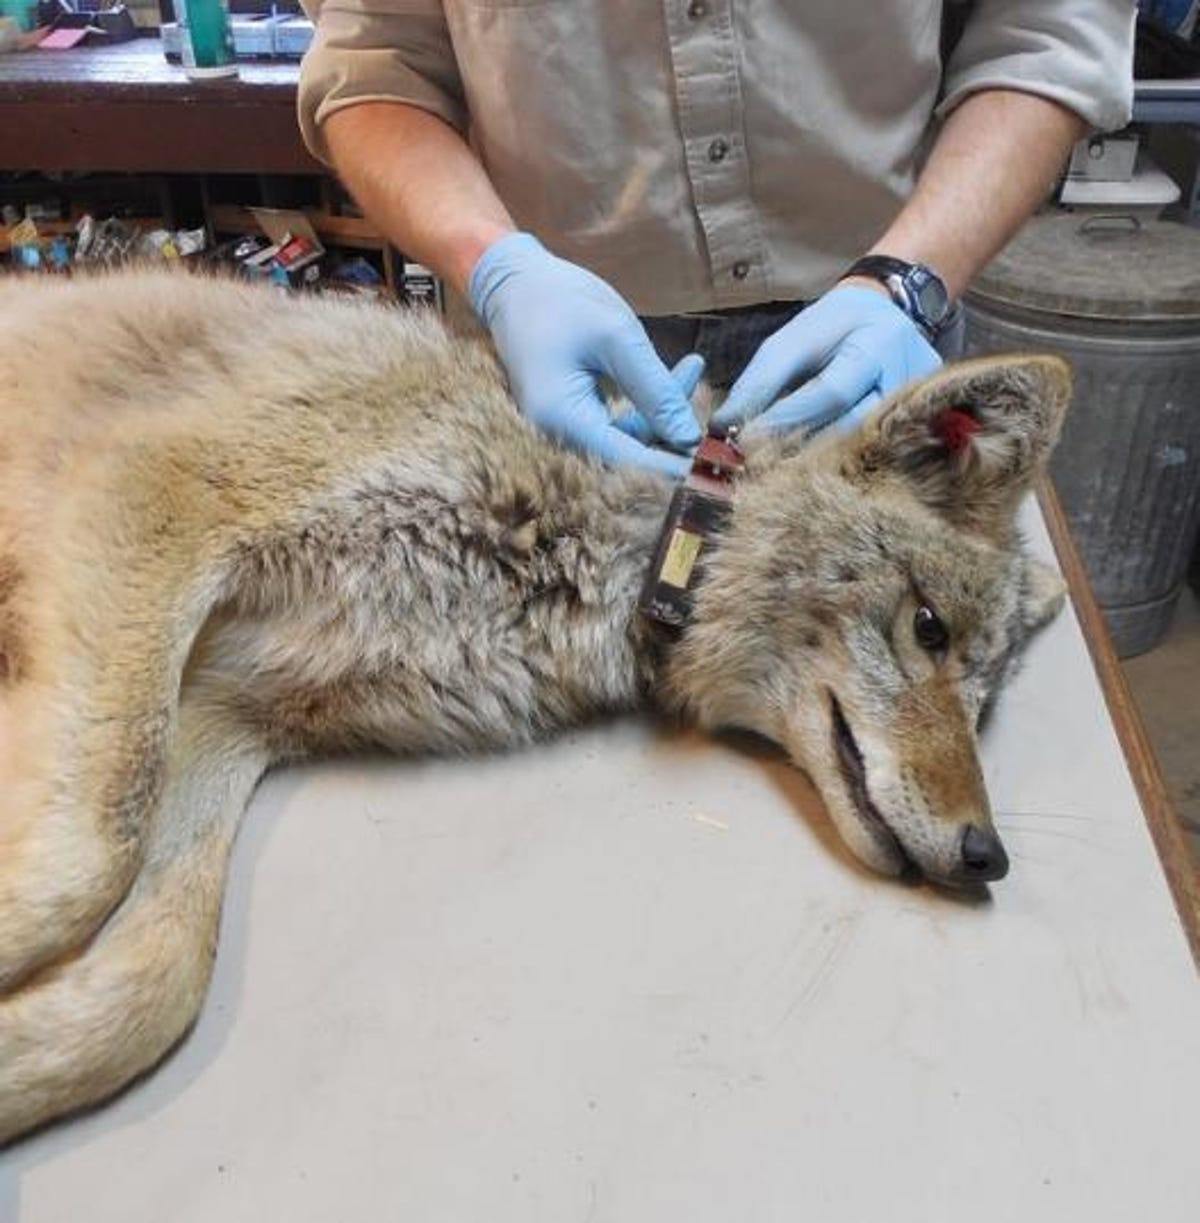 Badacz w rękawiczkach zakłada obrożę leżącemu na boku wilkowi.